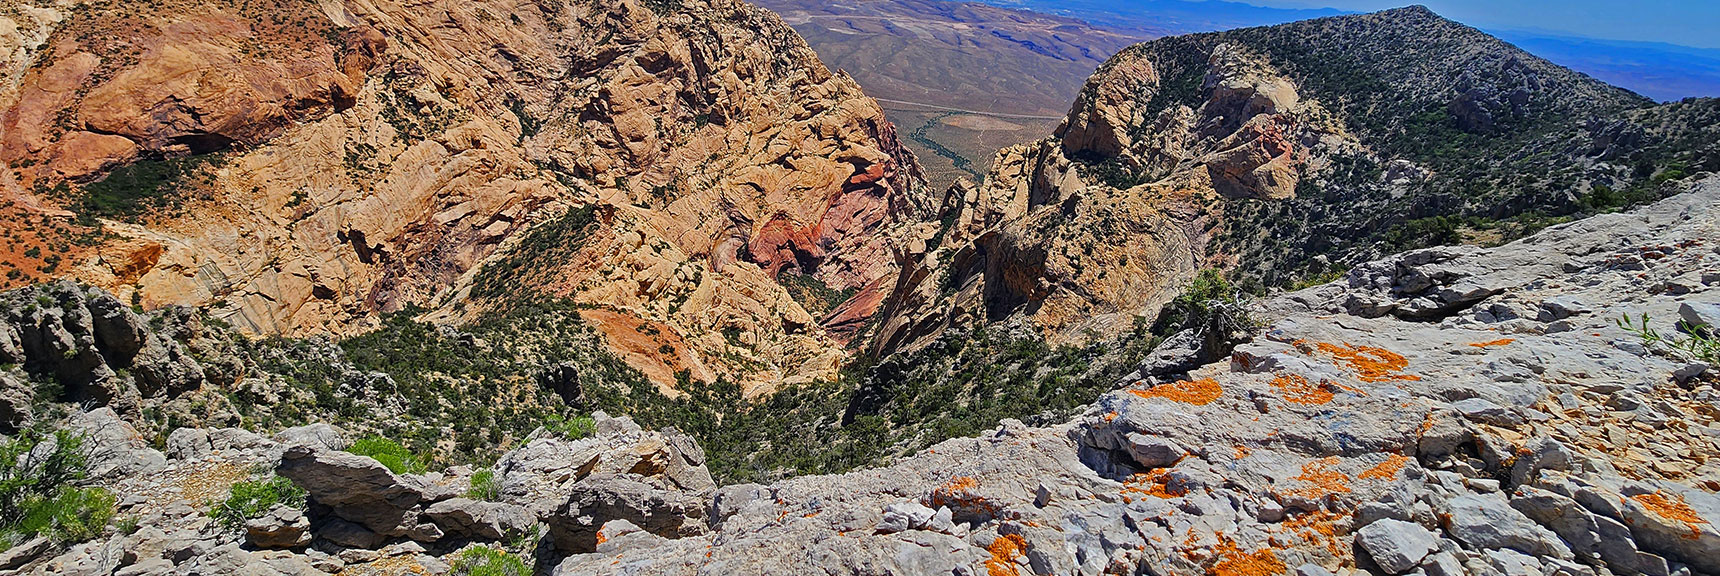 View Down Into First Creek Canyon | Mt Wilson to Hidden Peak | Upper Crest Ridgeline | Rainbow Mountain Wilderness, Nevada